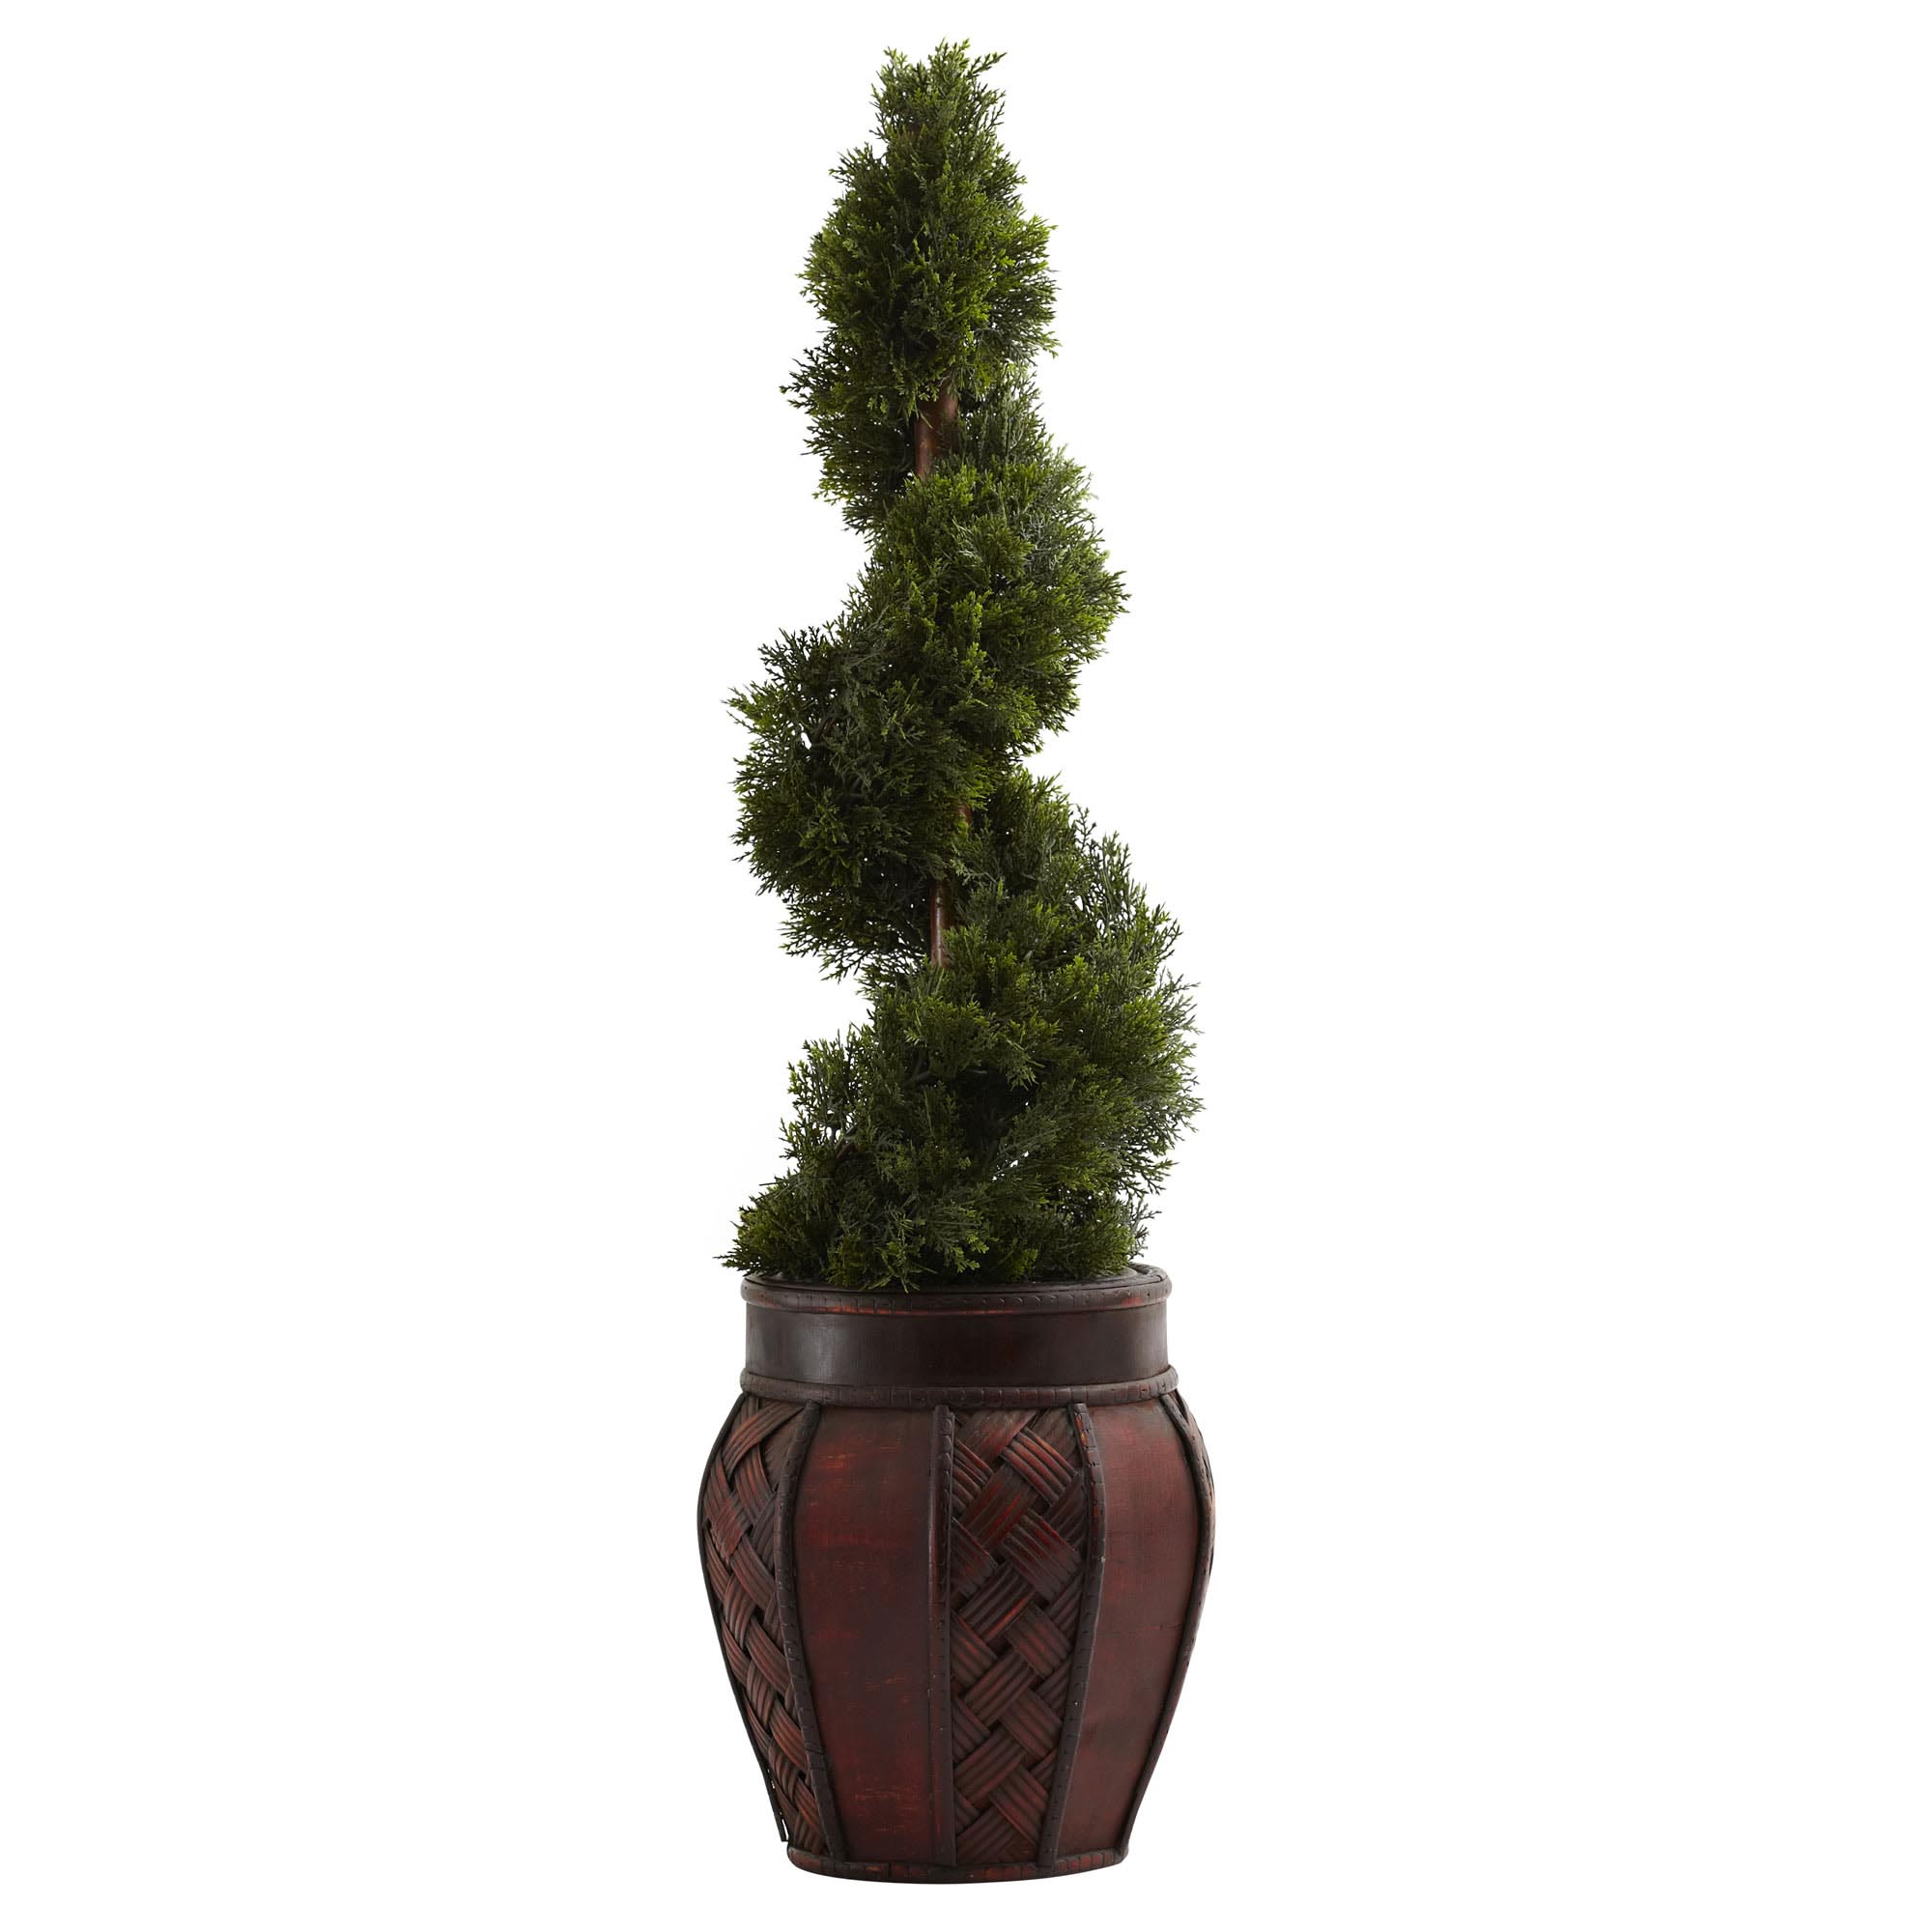 31 Inch Silk Cedar Spiral In Decorative Planter